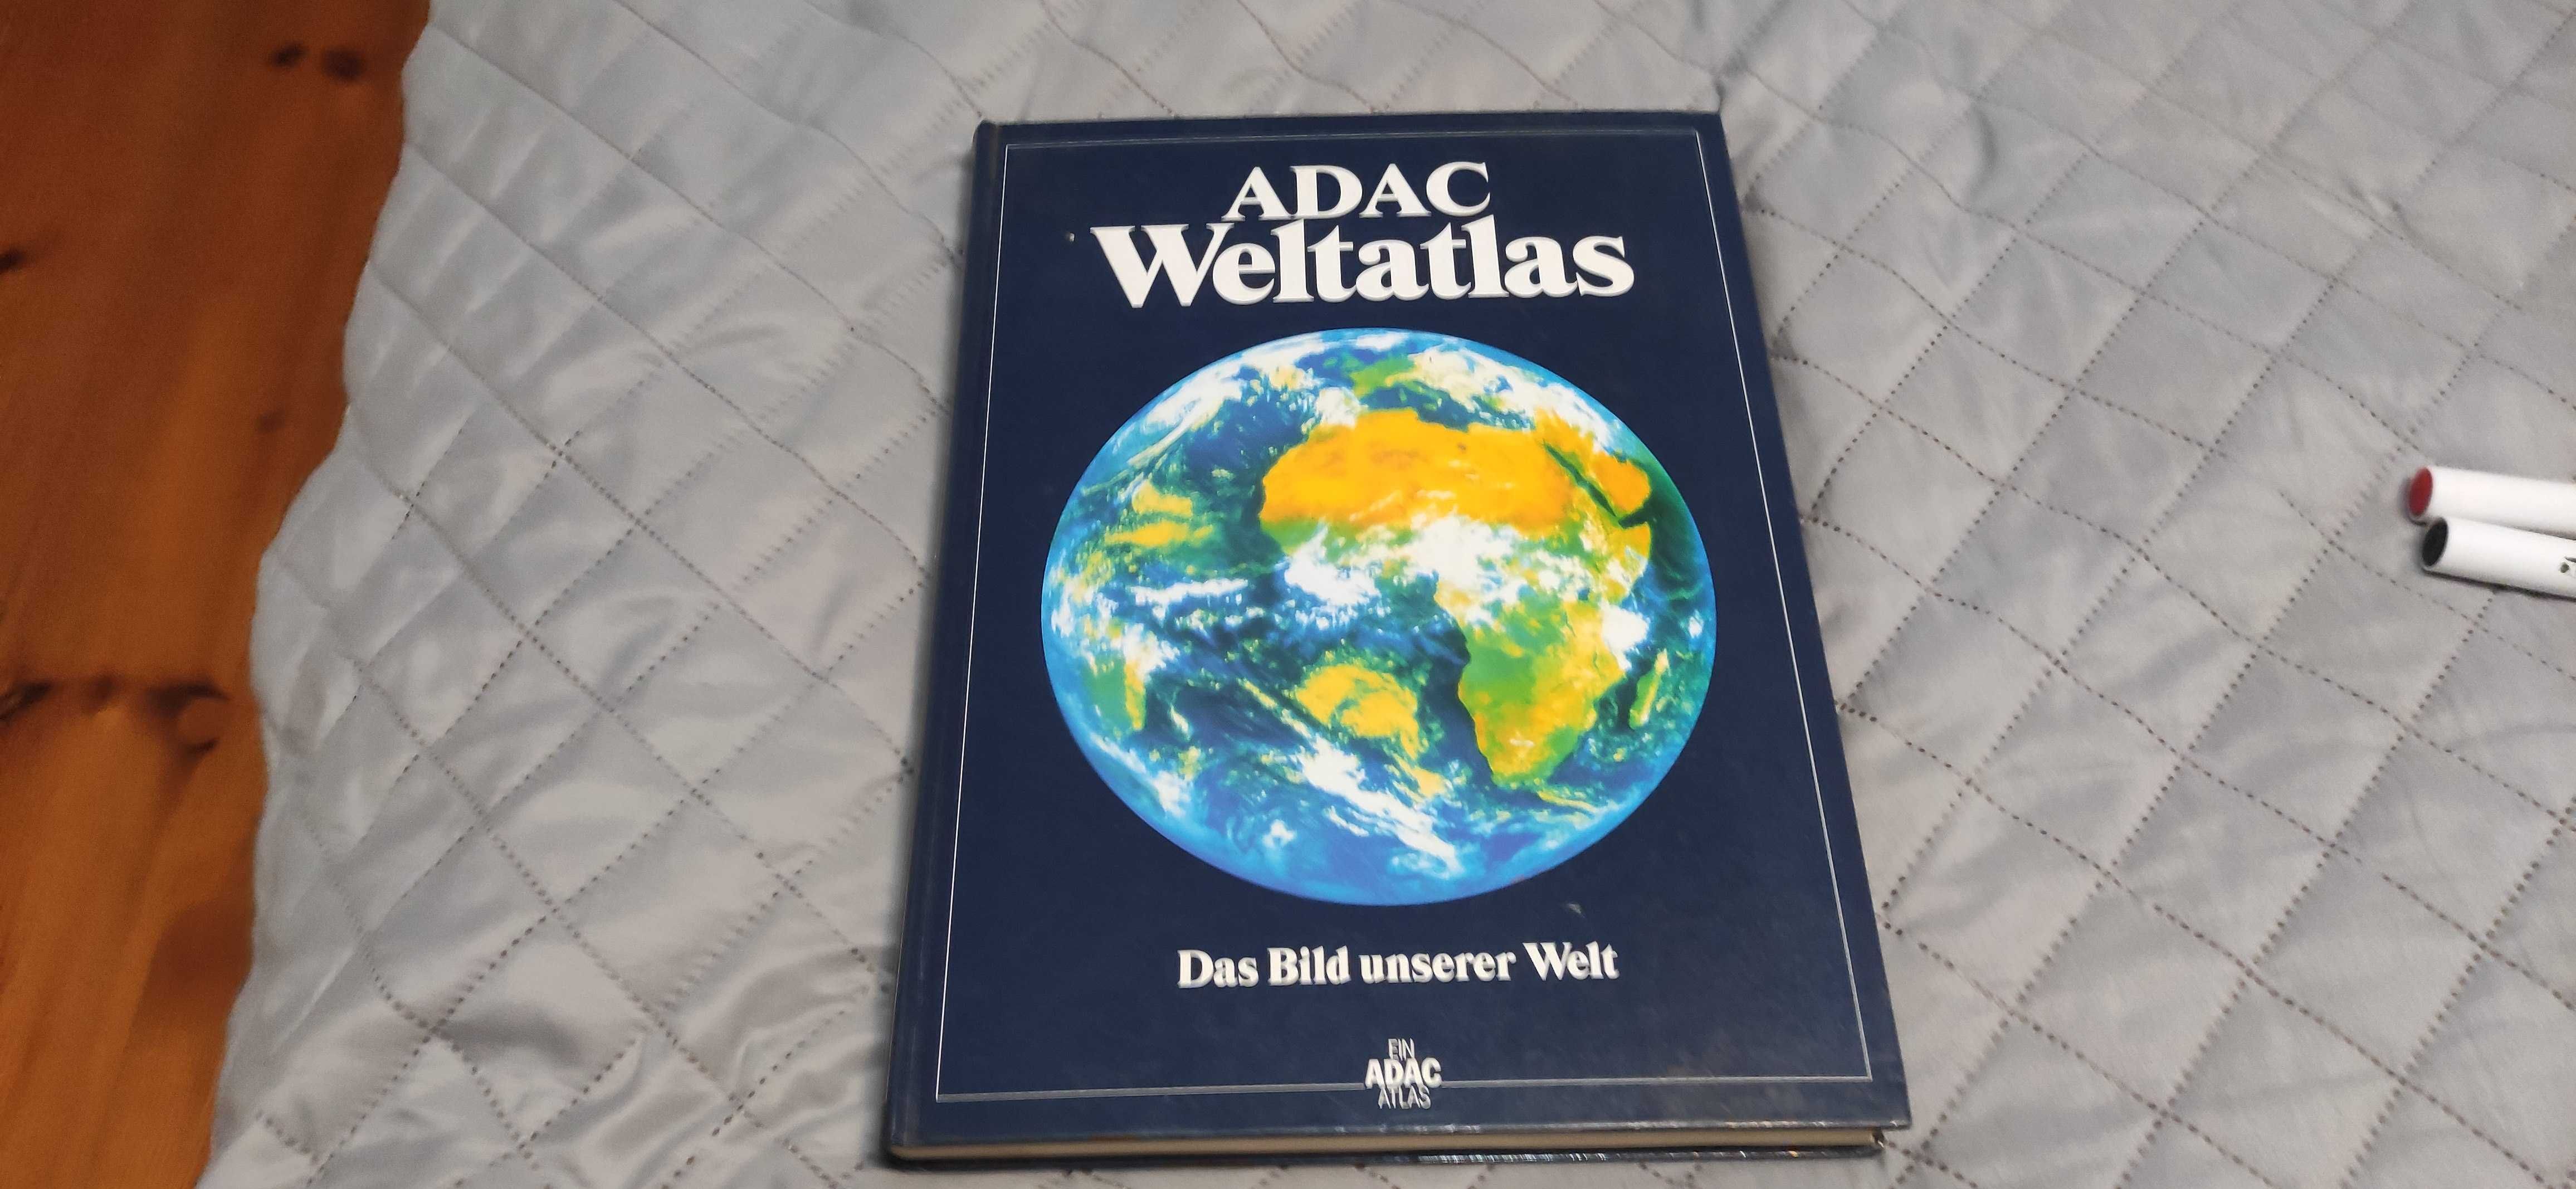 Atlas Niemiecki - Adac Weltatlas z 1997 roku